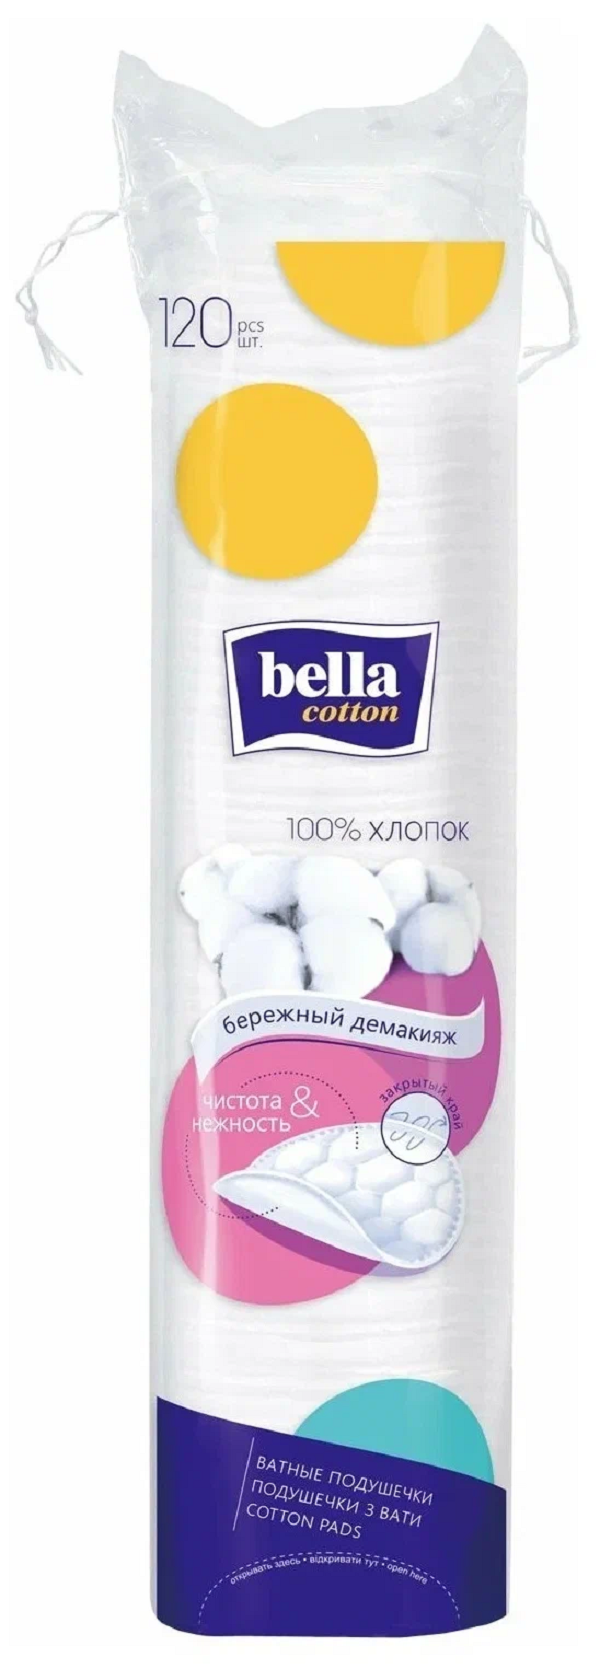 Диски ватные Bella Cotton хлопок, 120 шт. ватные диски вкусвилл прошитые 120 шт